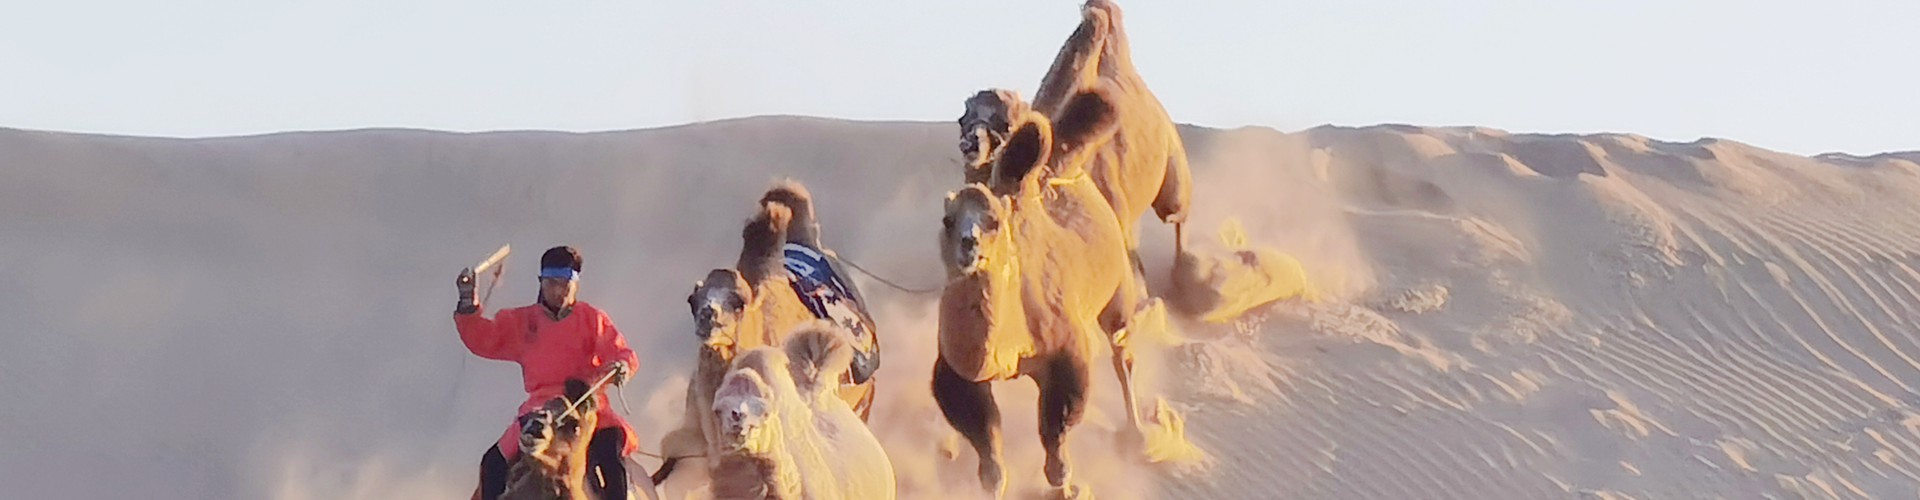 骆驼冲沙